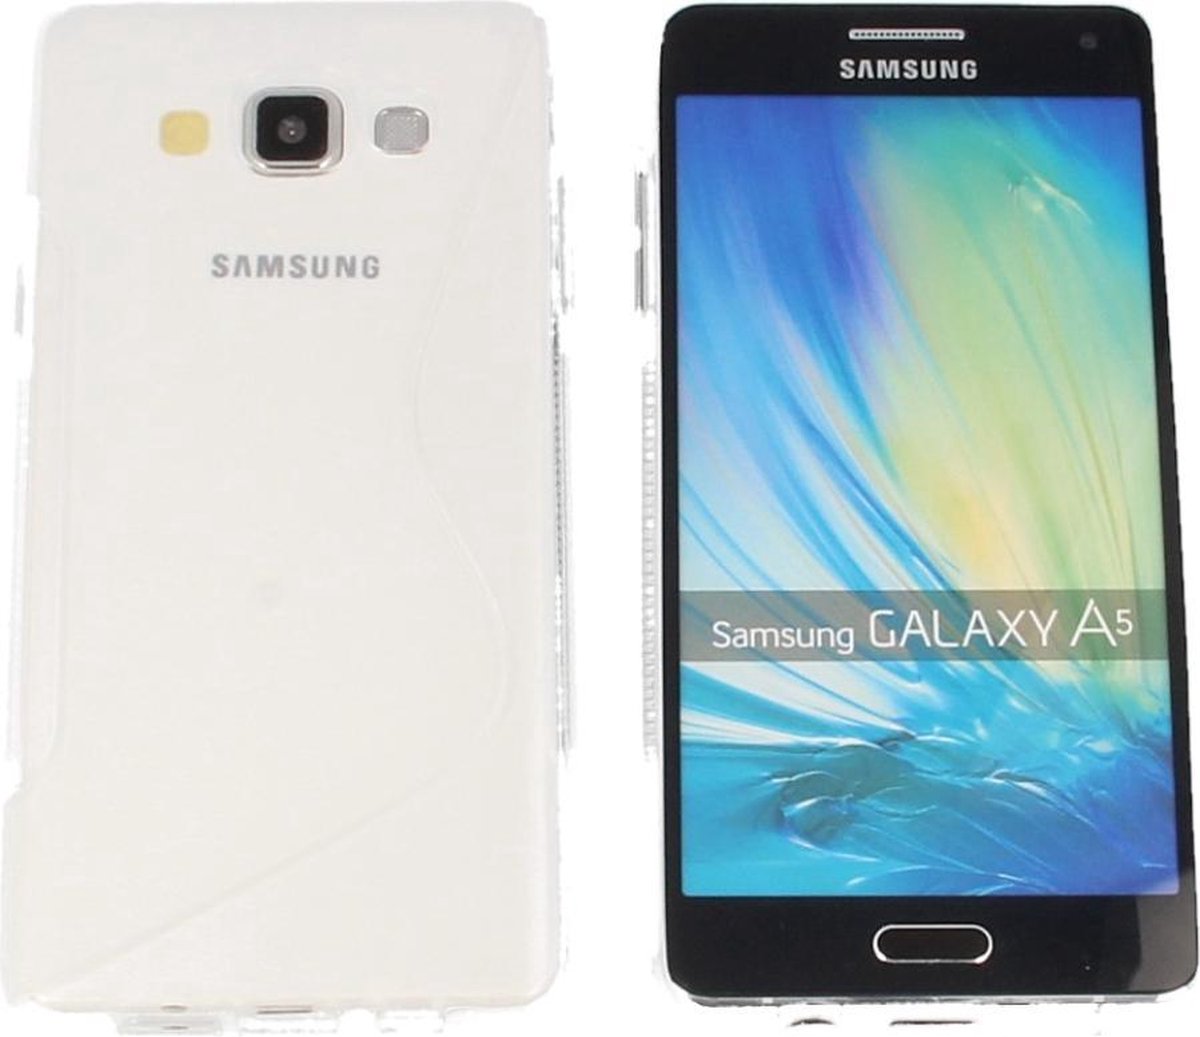 S Line Gel Silicone Case Hoesje Transparant voor Samsung Galaxy J5 2016